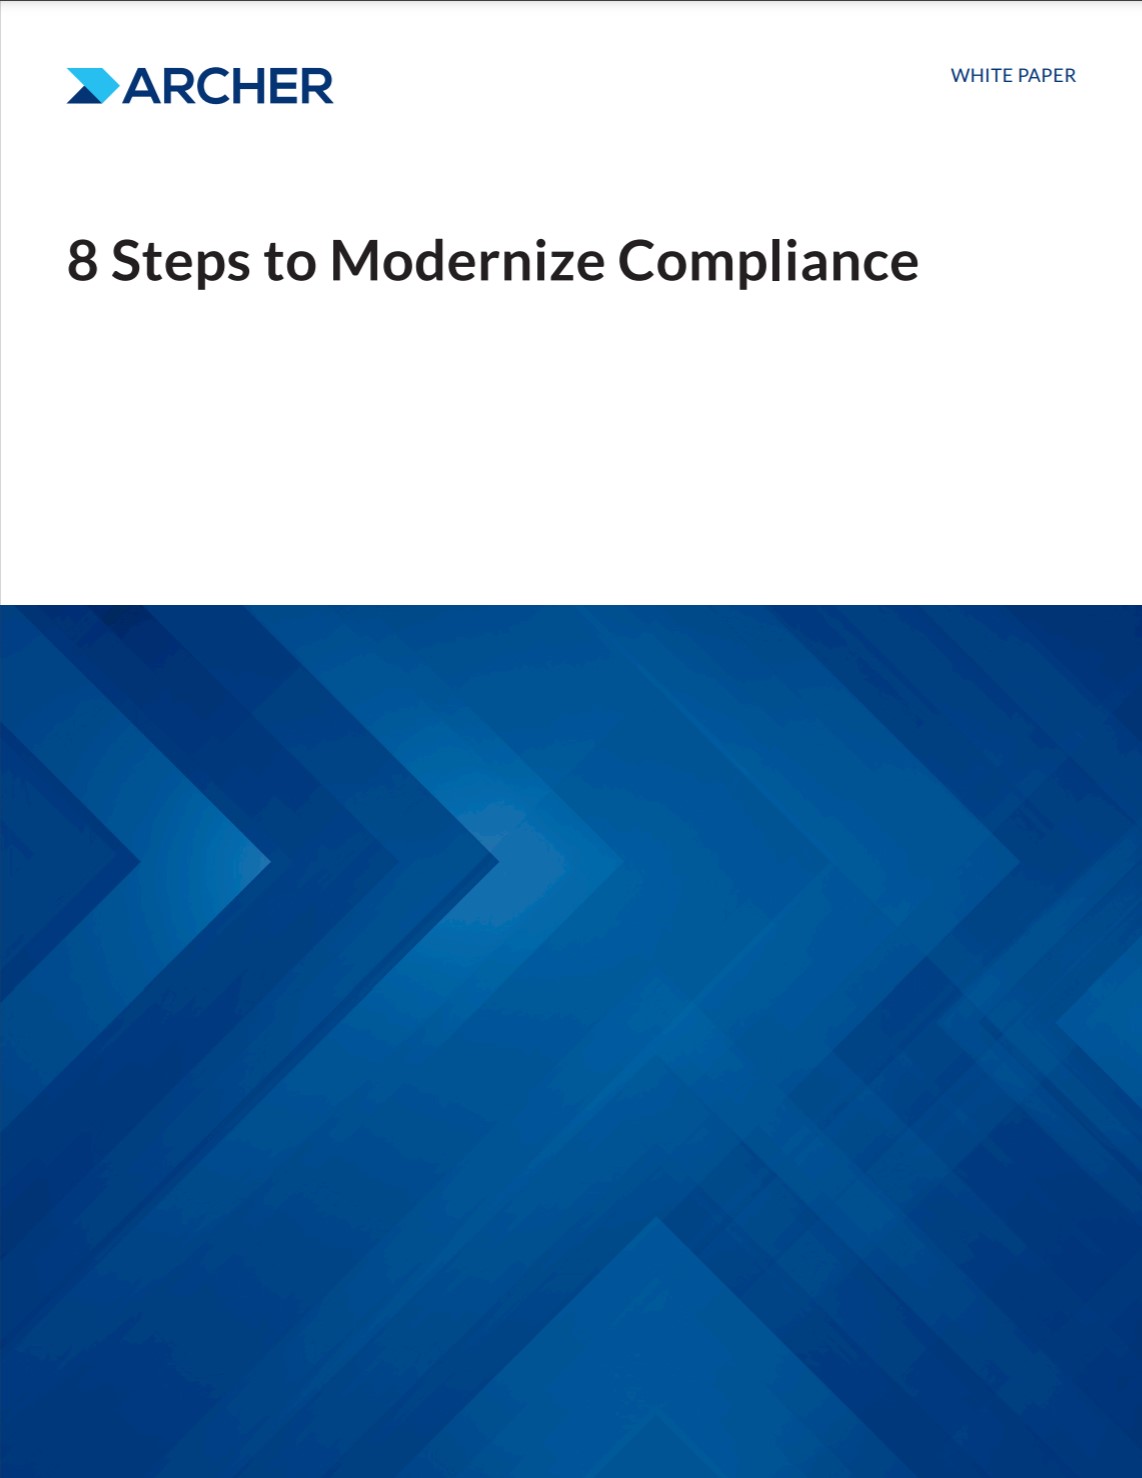 8 steps to modernize compliance